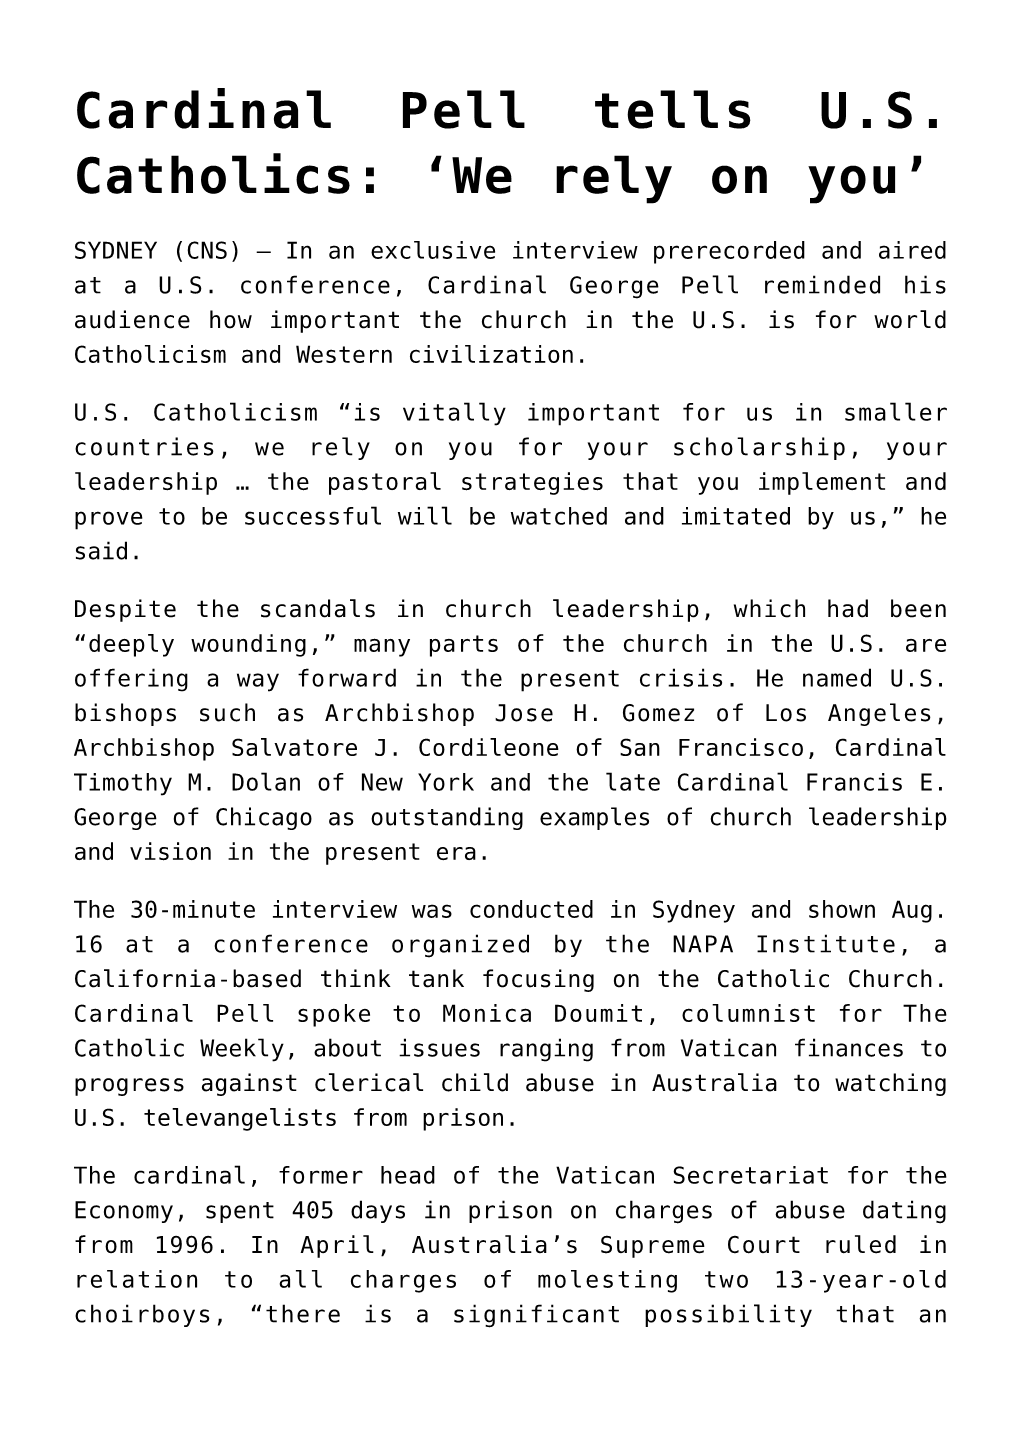 Cardinal Pell Tells US Catholics